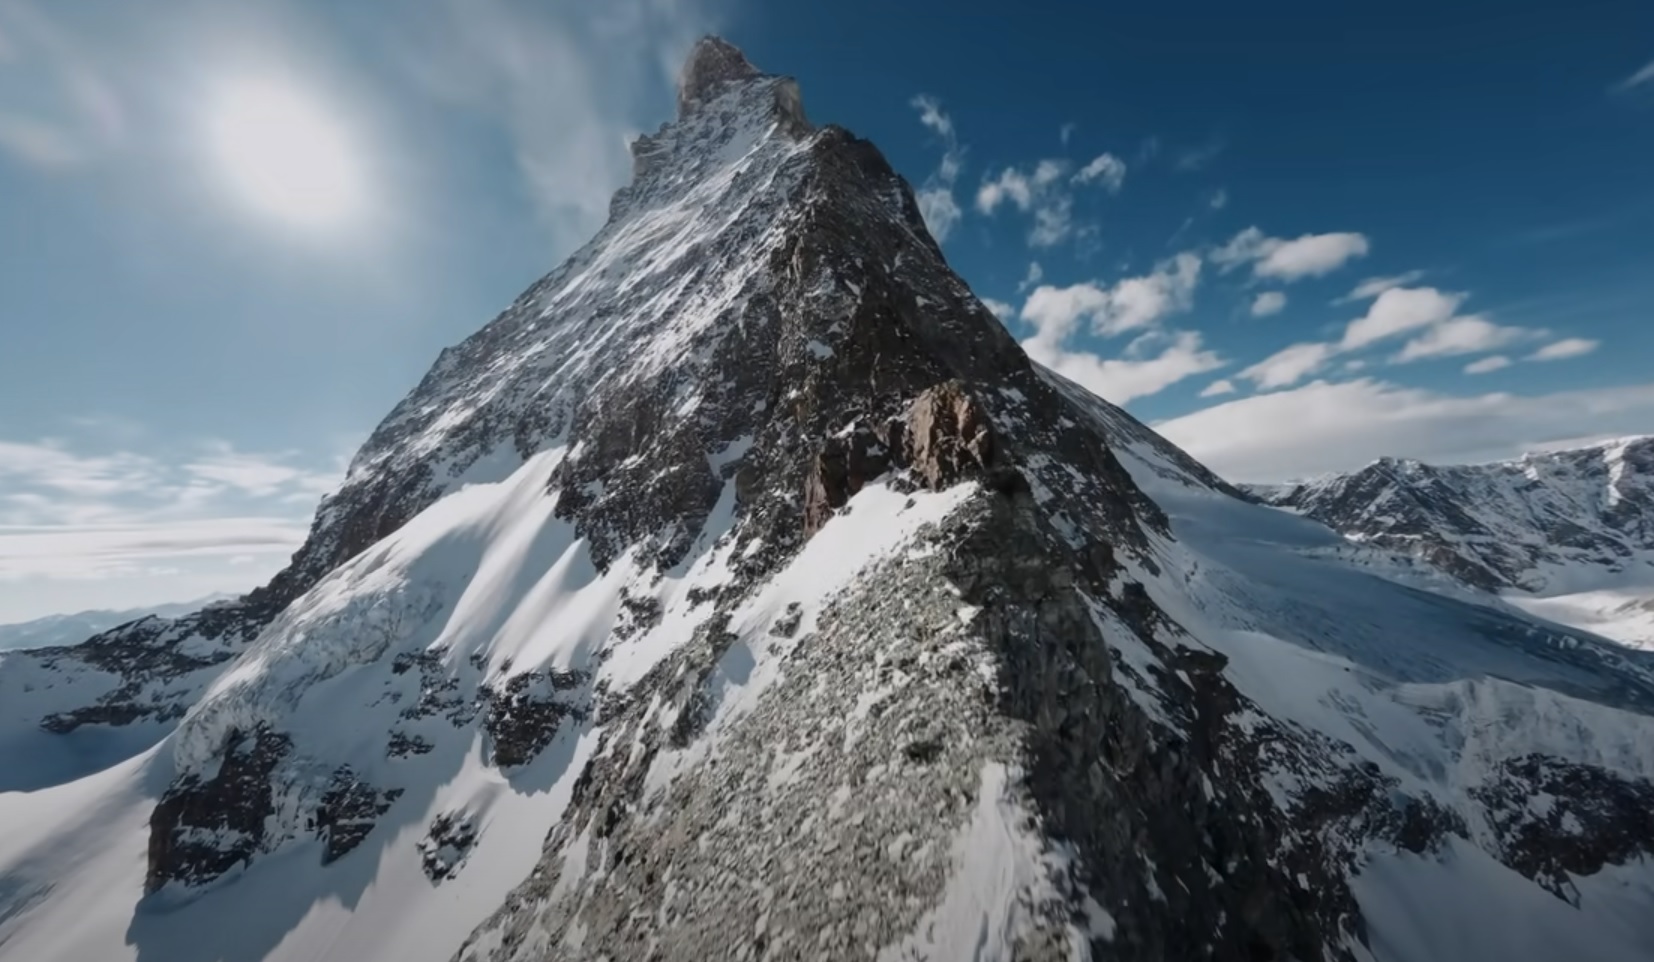 FPV Drone Pilot Captures Stunning Footage of the Matterhorn